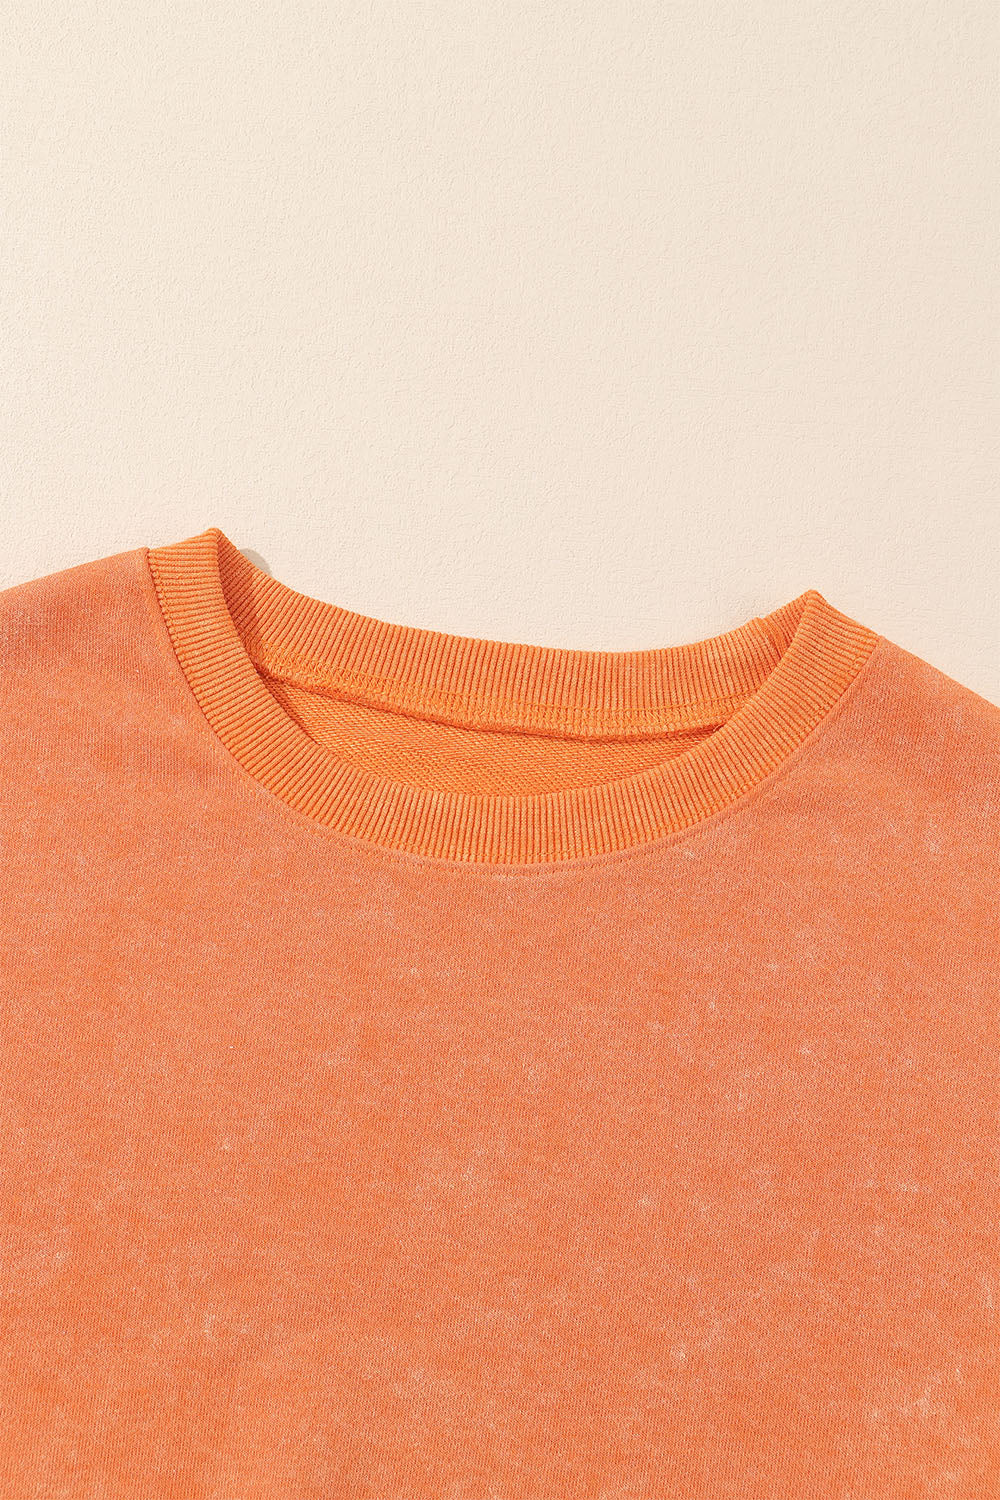 Prevelika majica s rebrastim obrubom u boji grejpfrut naranče